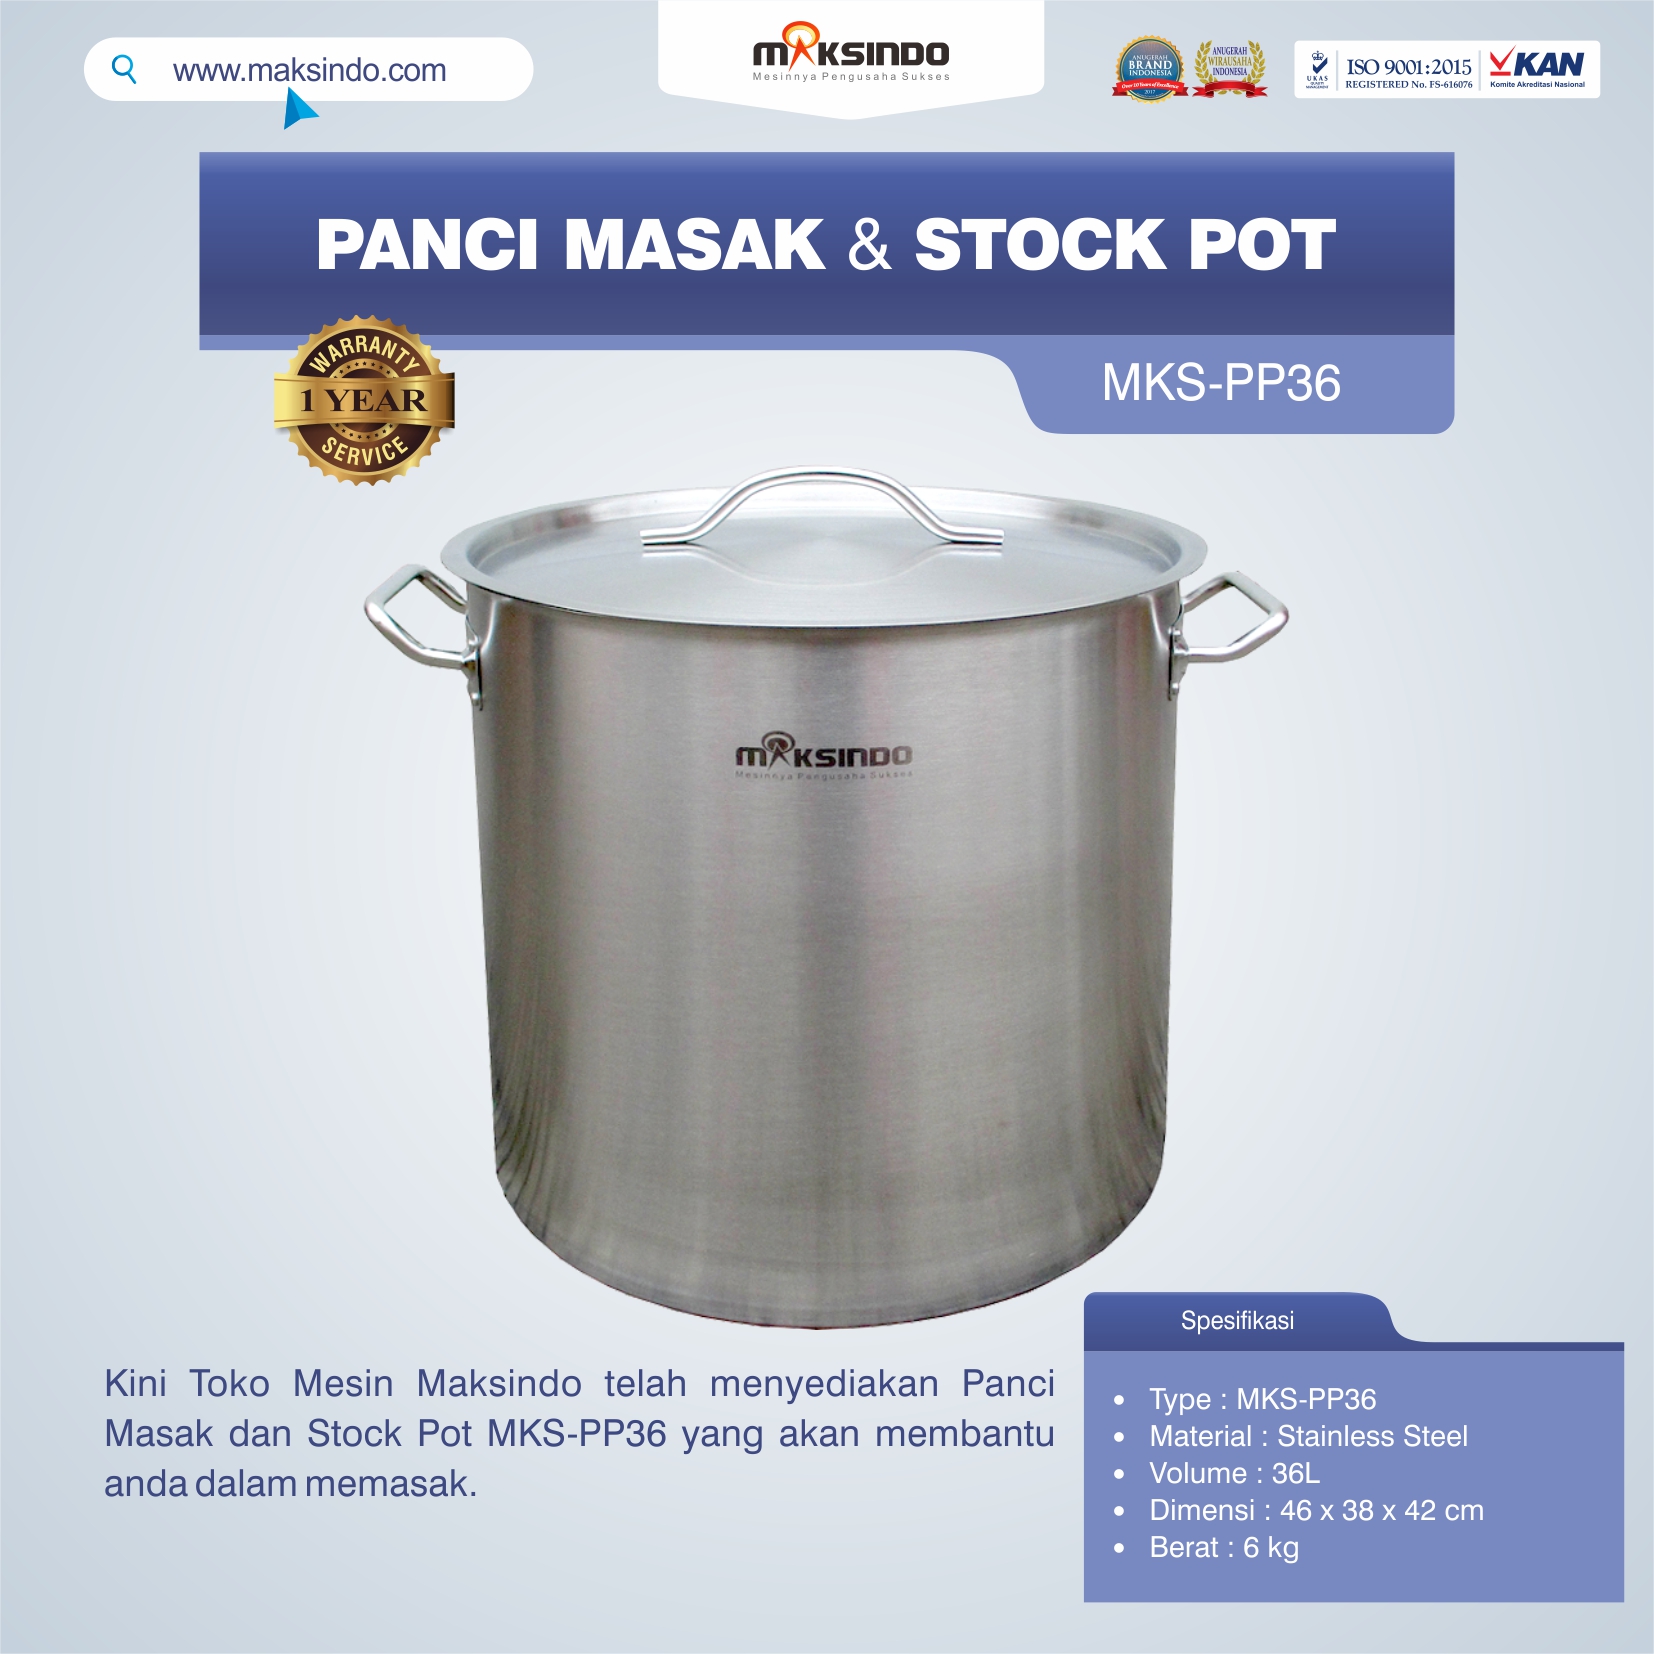 Jual Panci Masak Dan Stock Pot MKS-PP36 di Banjarmasin